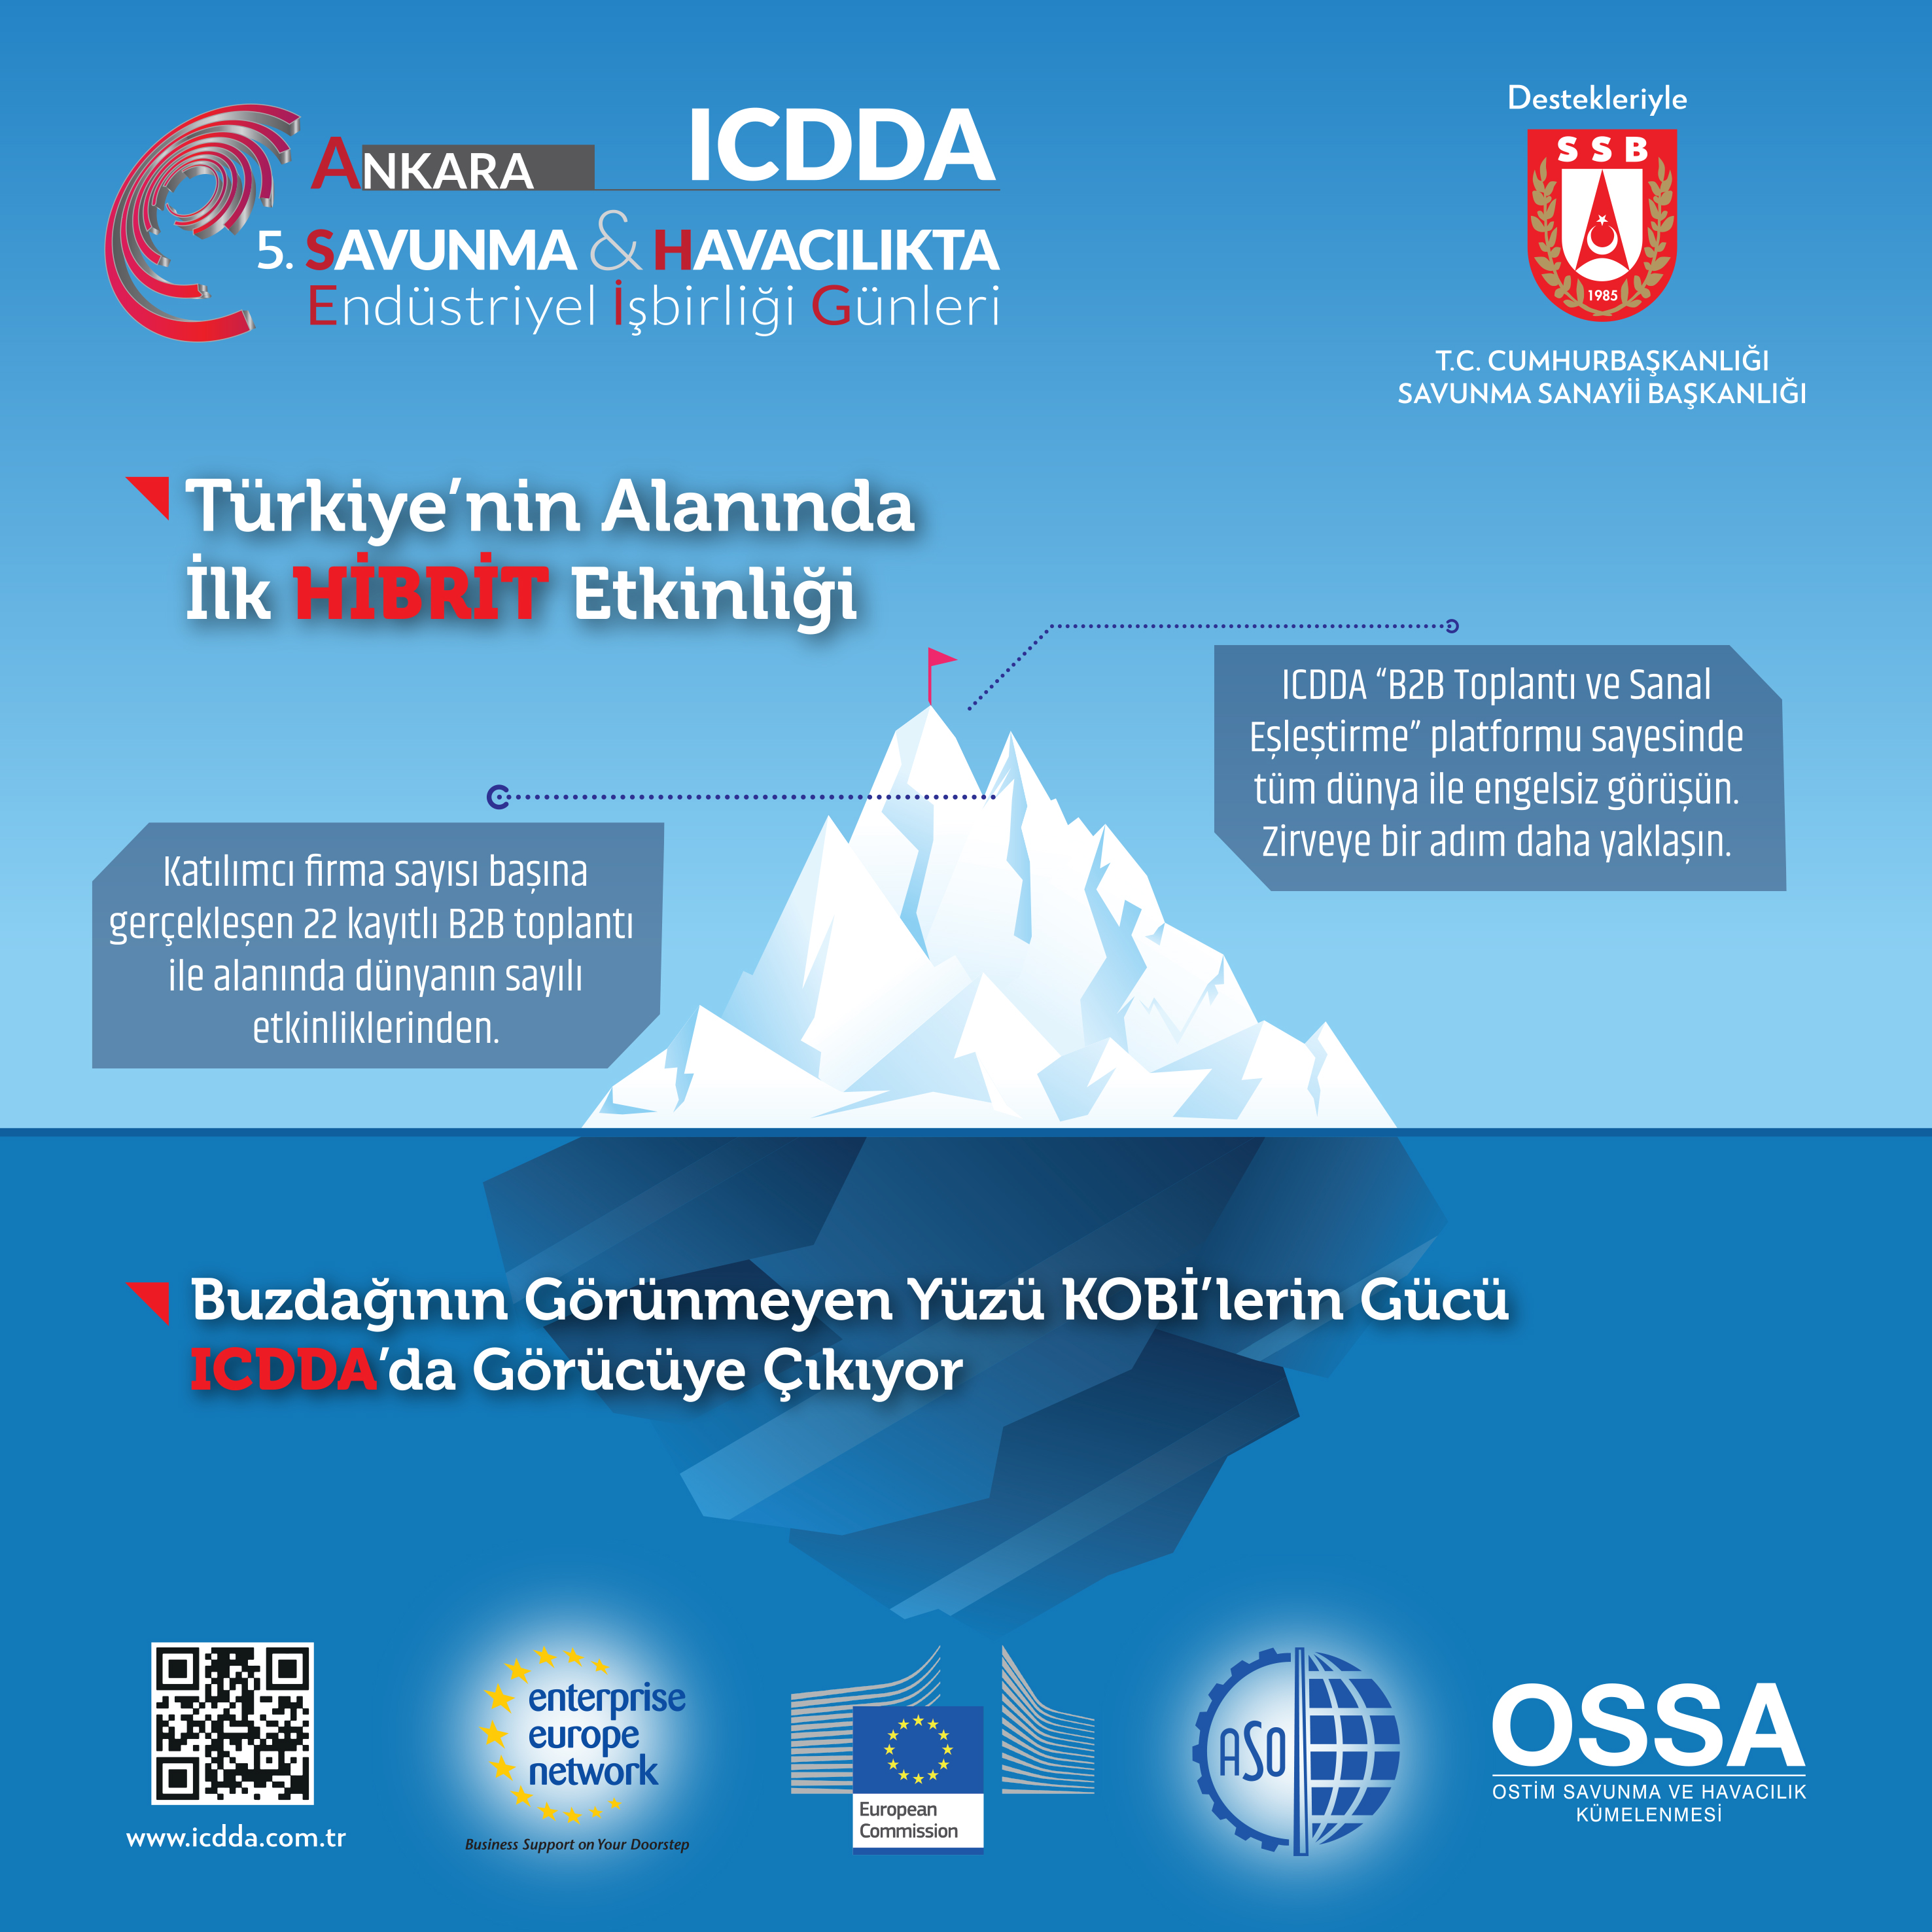 Buzdağının Görünmeyen Yüzü KOBİ'lerin Gücü ICDDA'de Görücüye Çıkıyor